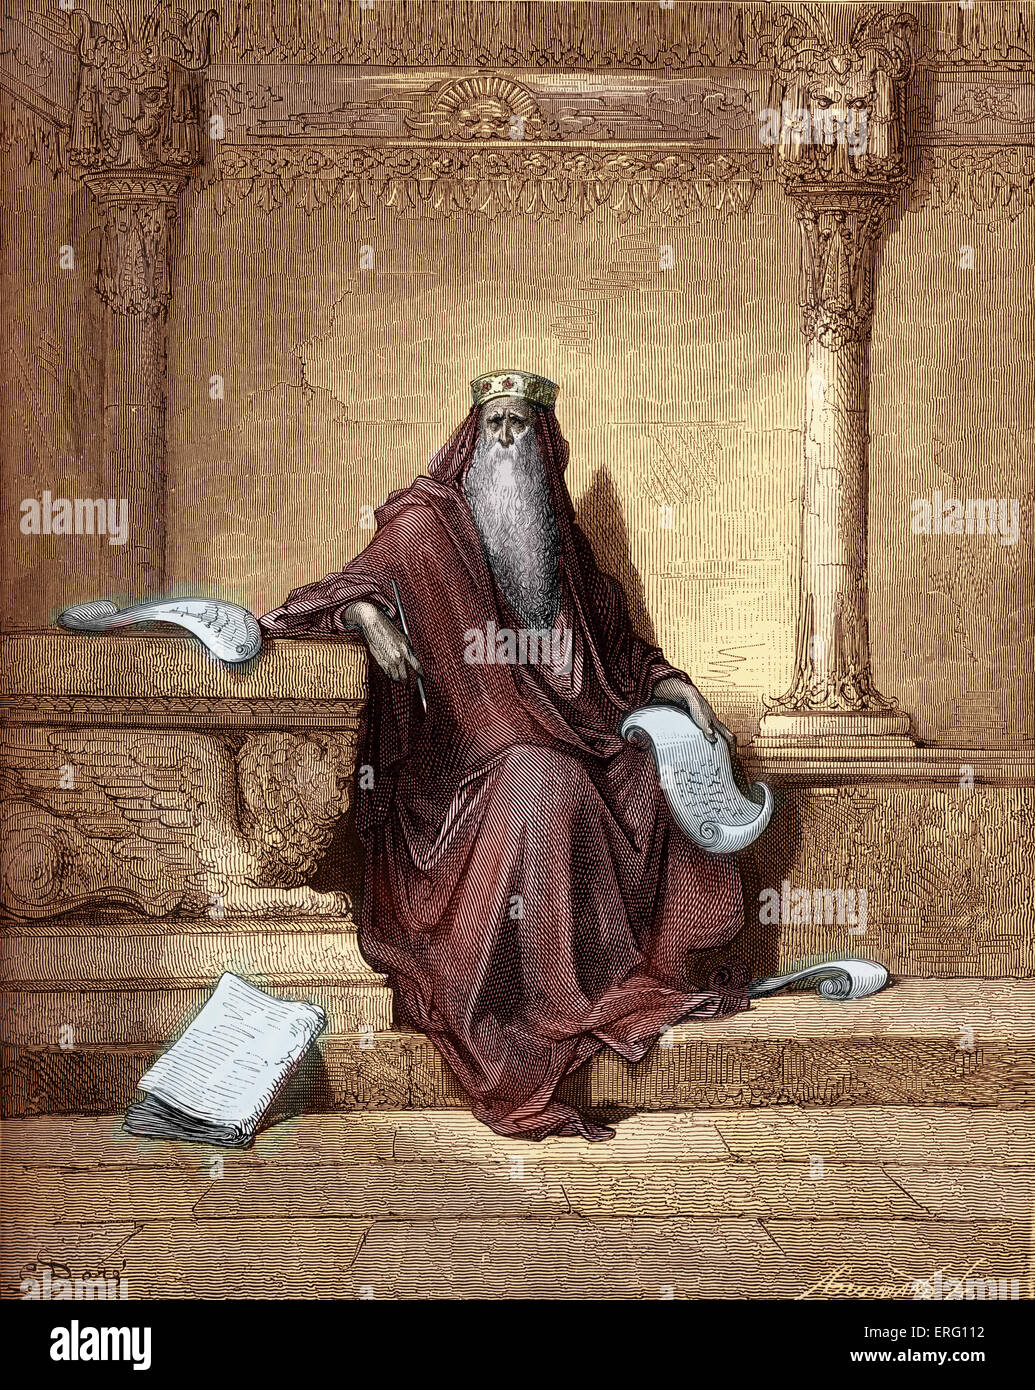 König Salomo. Sprüche zu schreiben. Stich von Gustave Doré (1832-1883).  Sprüche I: 1 - 4. "Die Sprüche Salomos Sohn Stockfotografie - Alamy